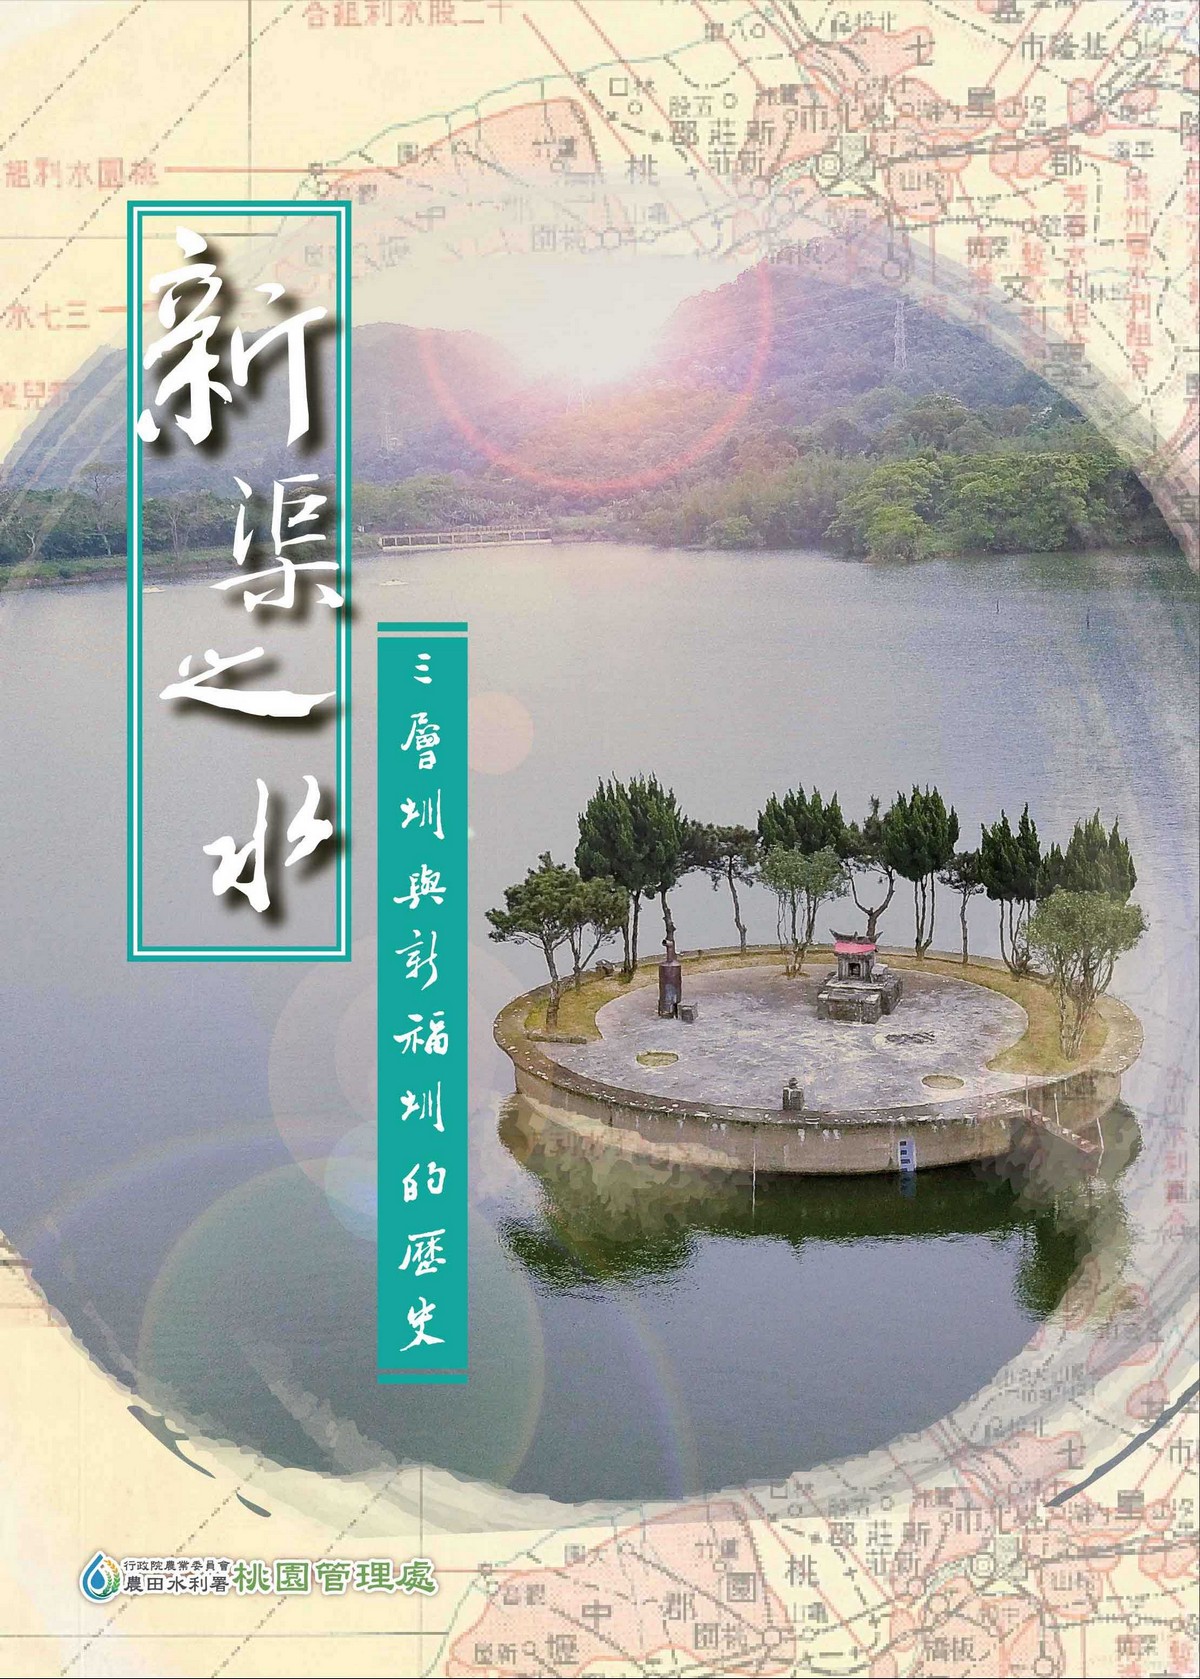 新渠之水: 三層圳與新福圳的歷史